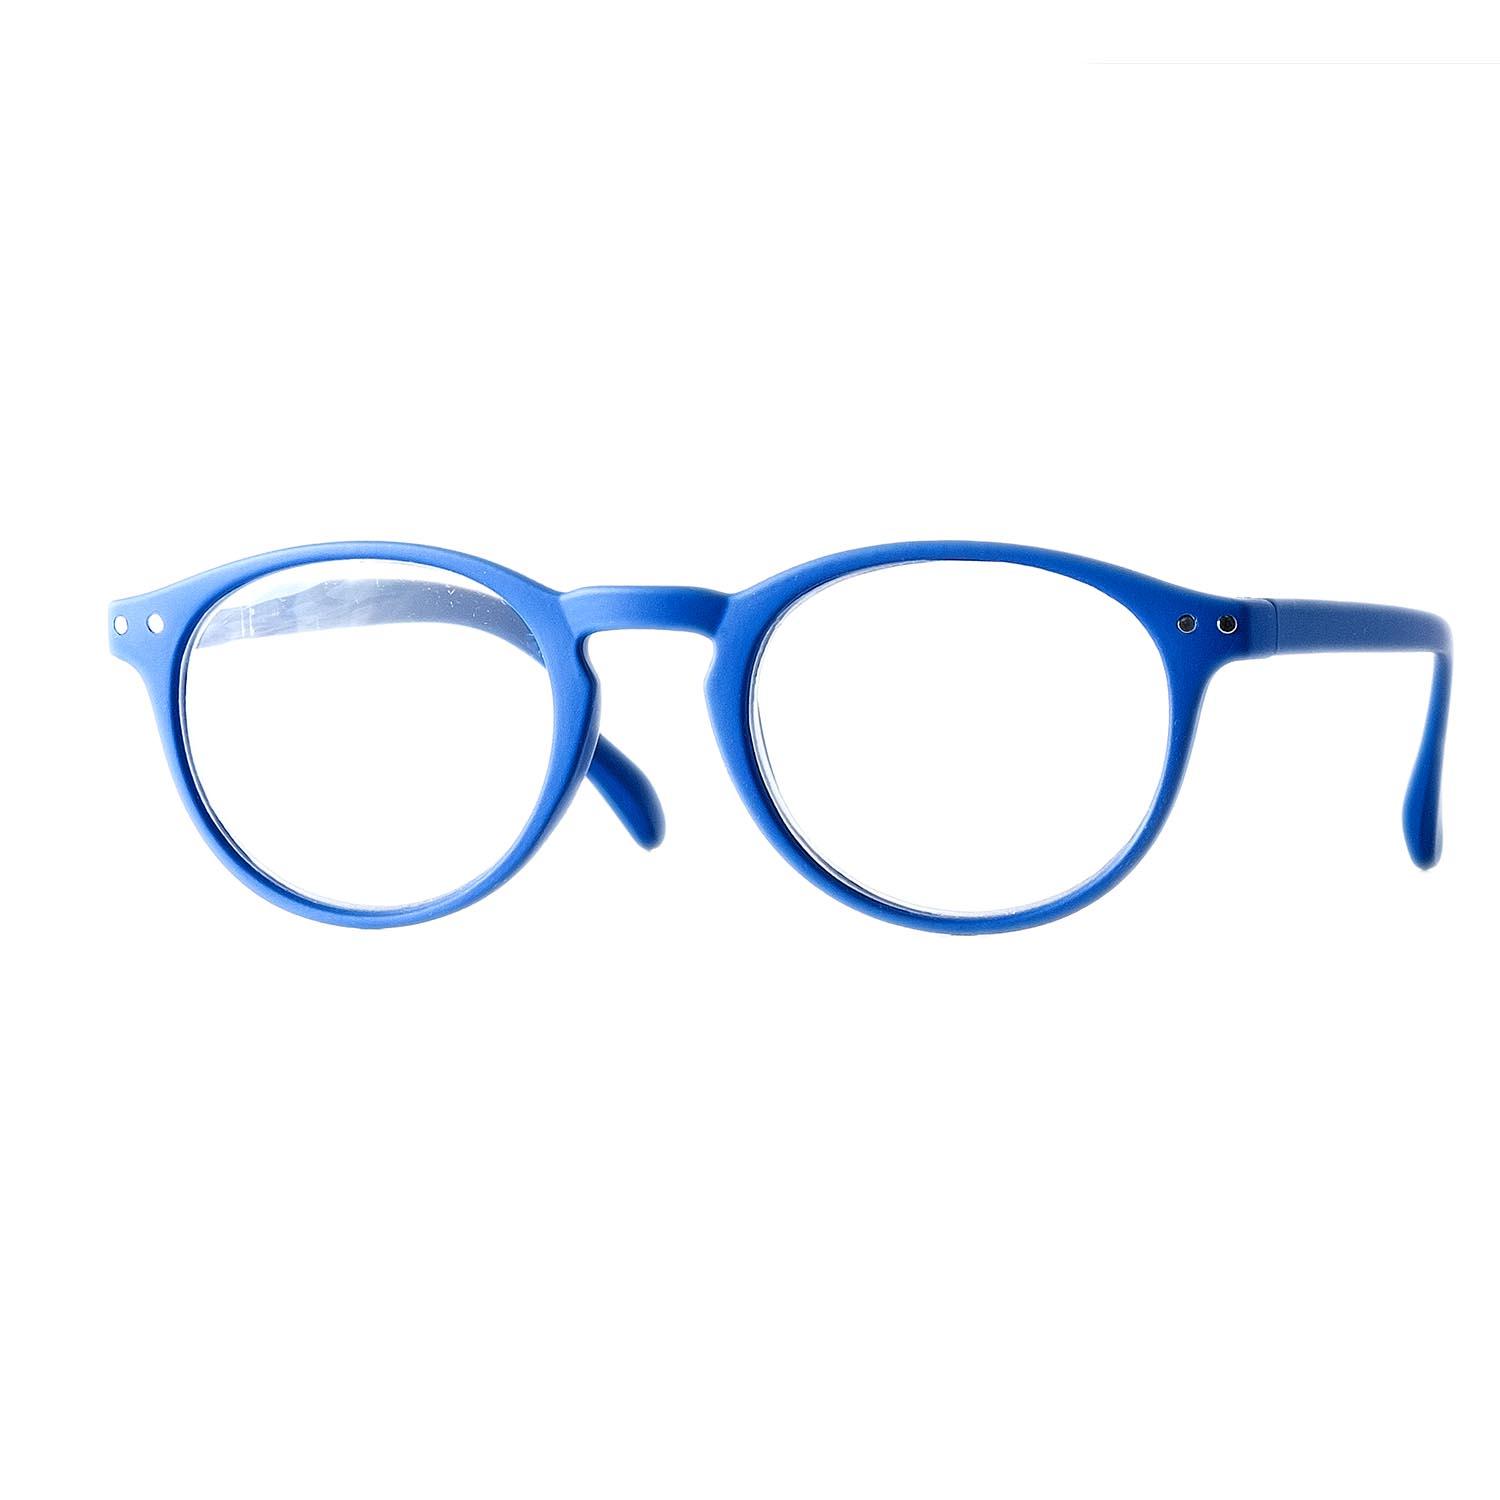 Gafas de lectura redondas color azul con aumento +3,00.